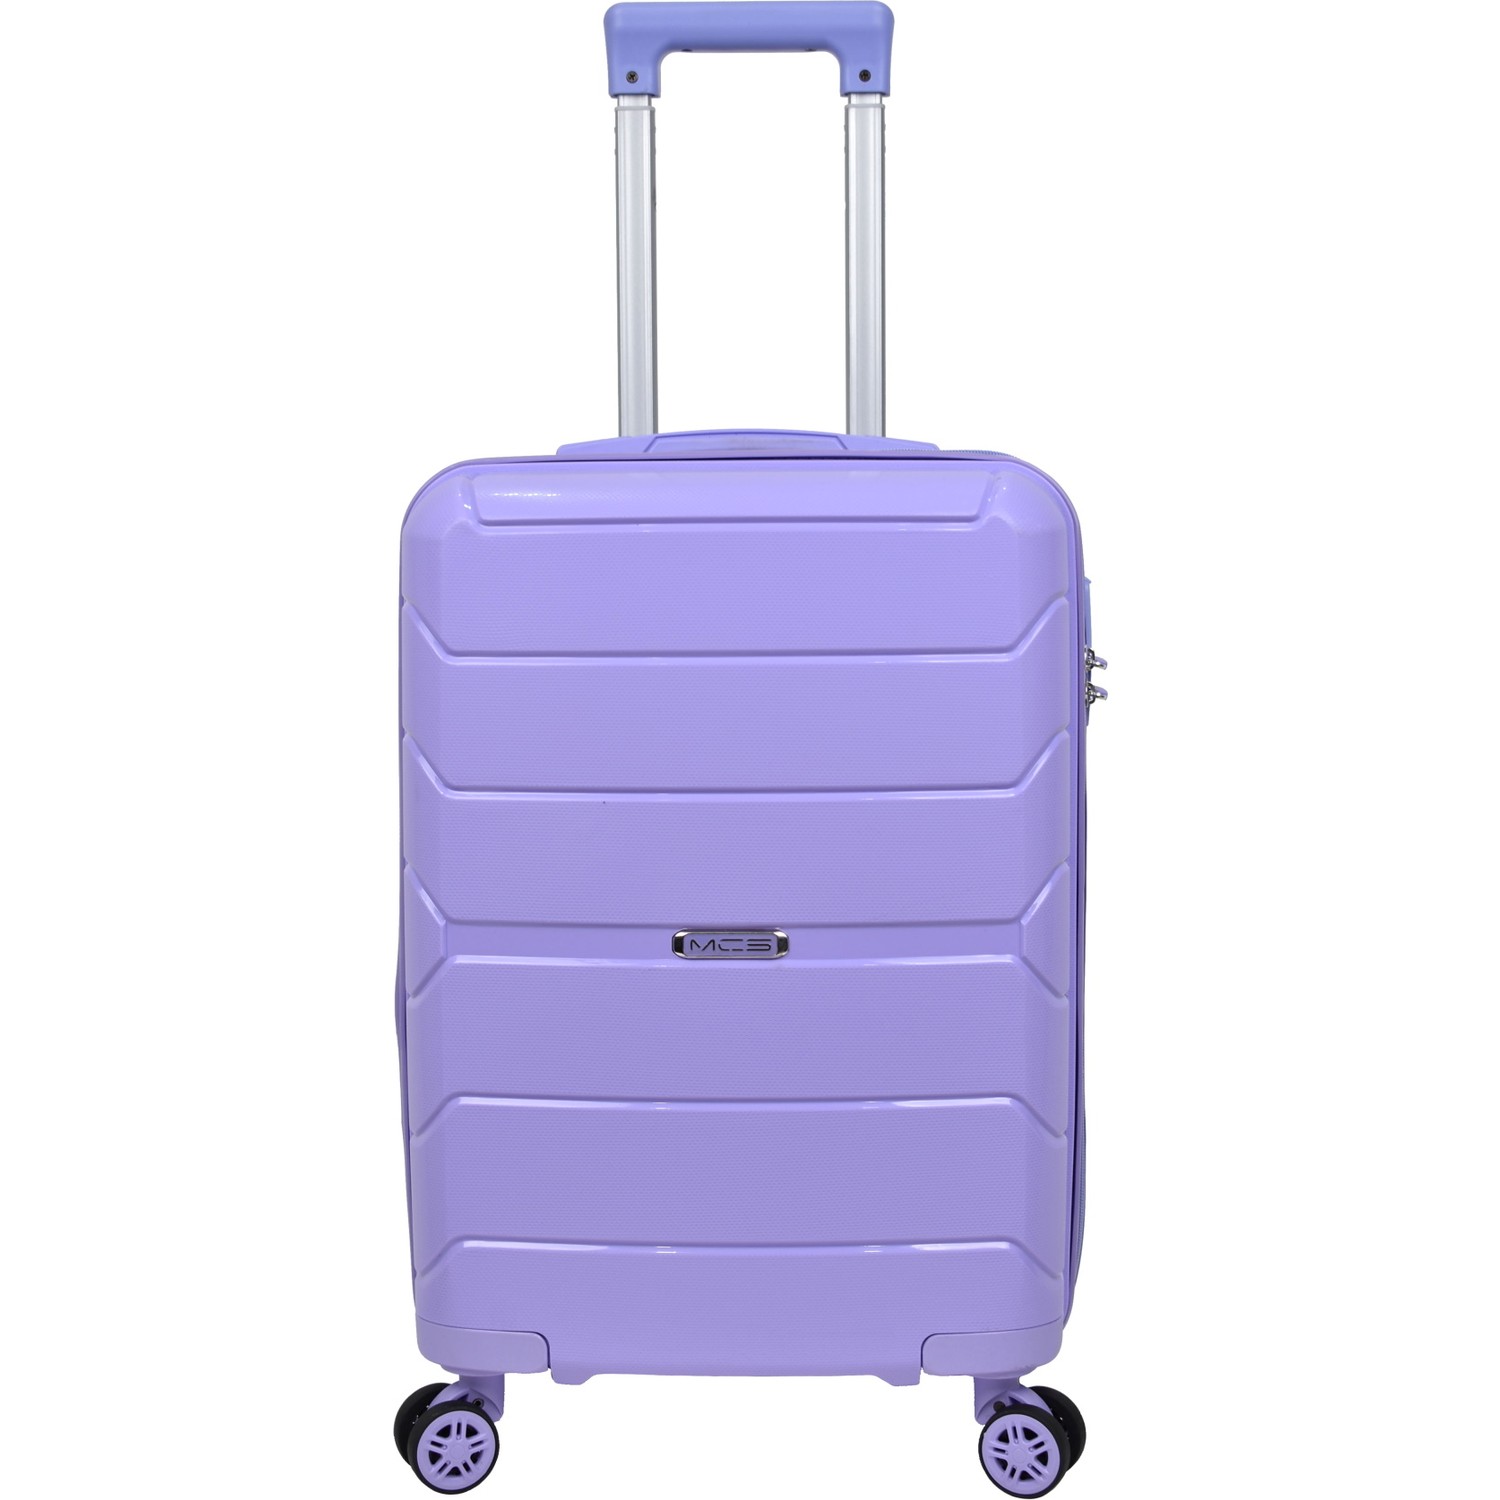 Маленький чемодан для ручьной клади из полипропилена MCS V366 S PURPLE! Для 8-10 кг!